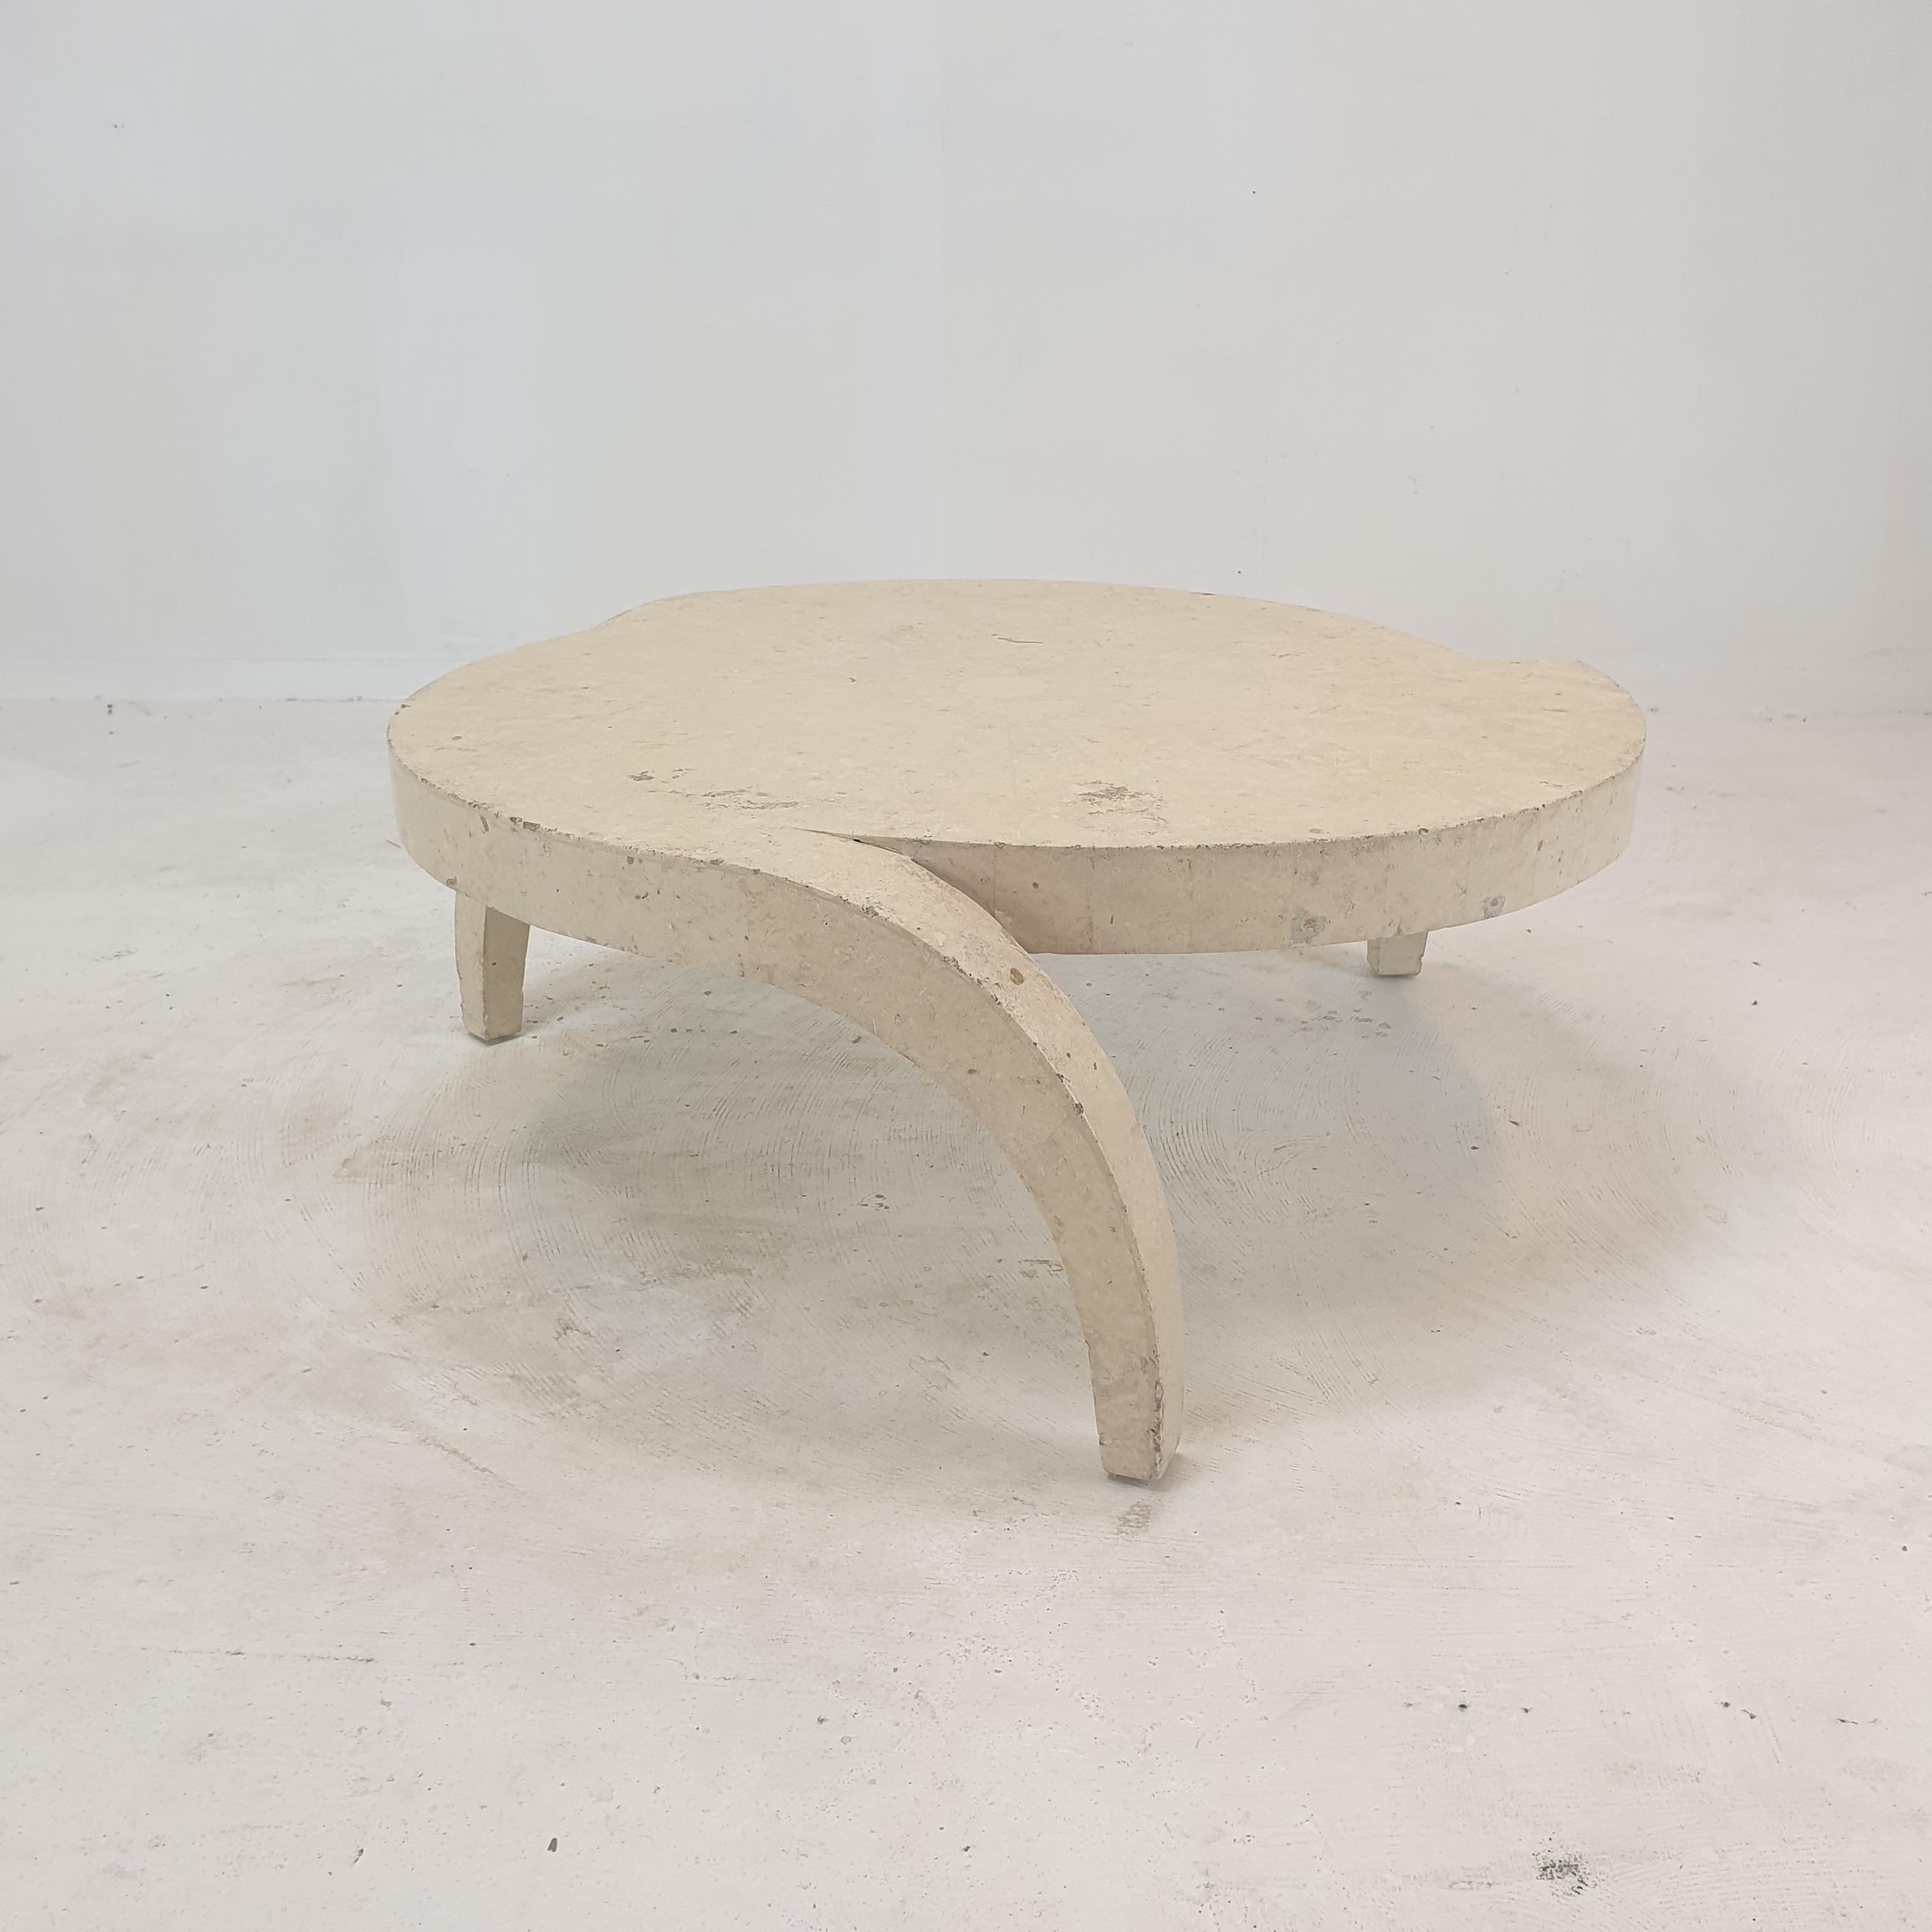 Très belle et rare table basse ou d'appoint, années 1980.

Cette table étonnante est fabriquée en pierre de Mactan ou en pierre fossile, un motif de brique aux bords rugueux.
Le poids est d'environ 15 kg (55 lbs).

Nous travaillons avec des